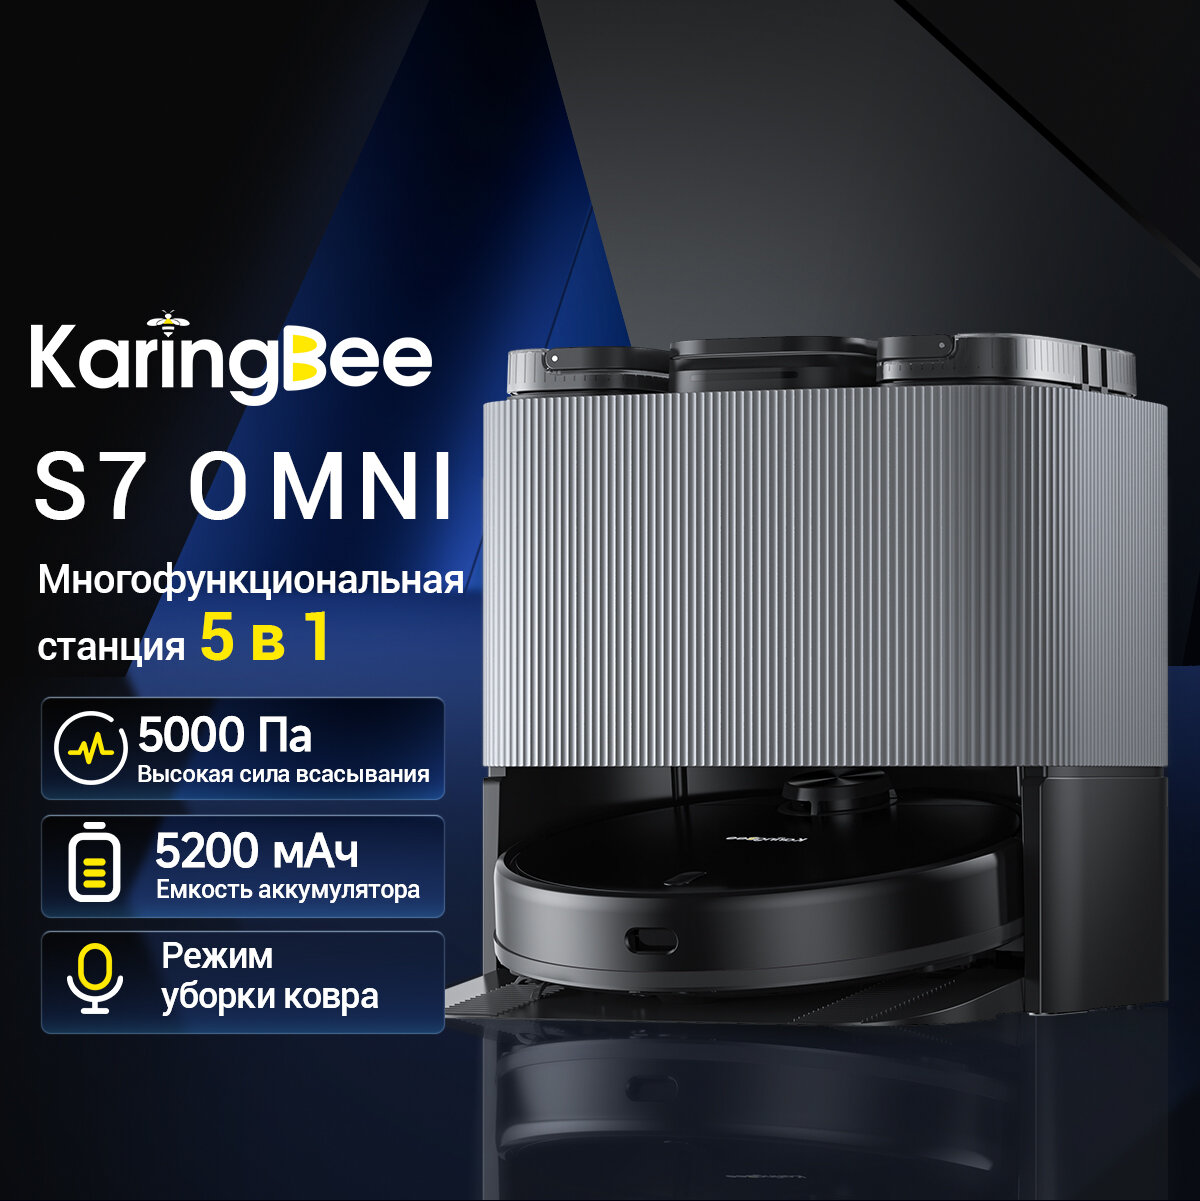 Робот-пылесос KaringBee S7 OMNI 4 в 1 (ЕАС-сертификат)